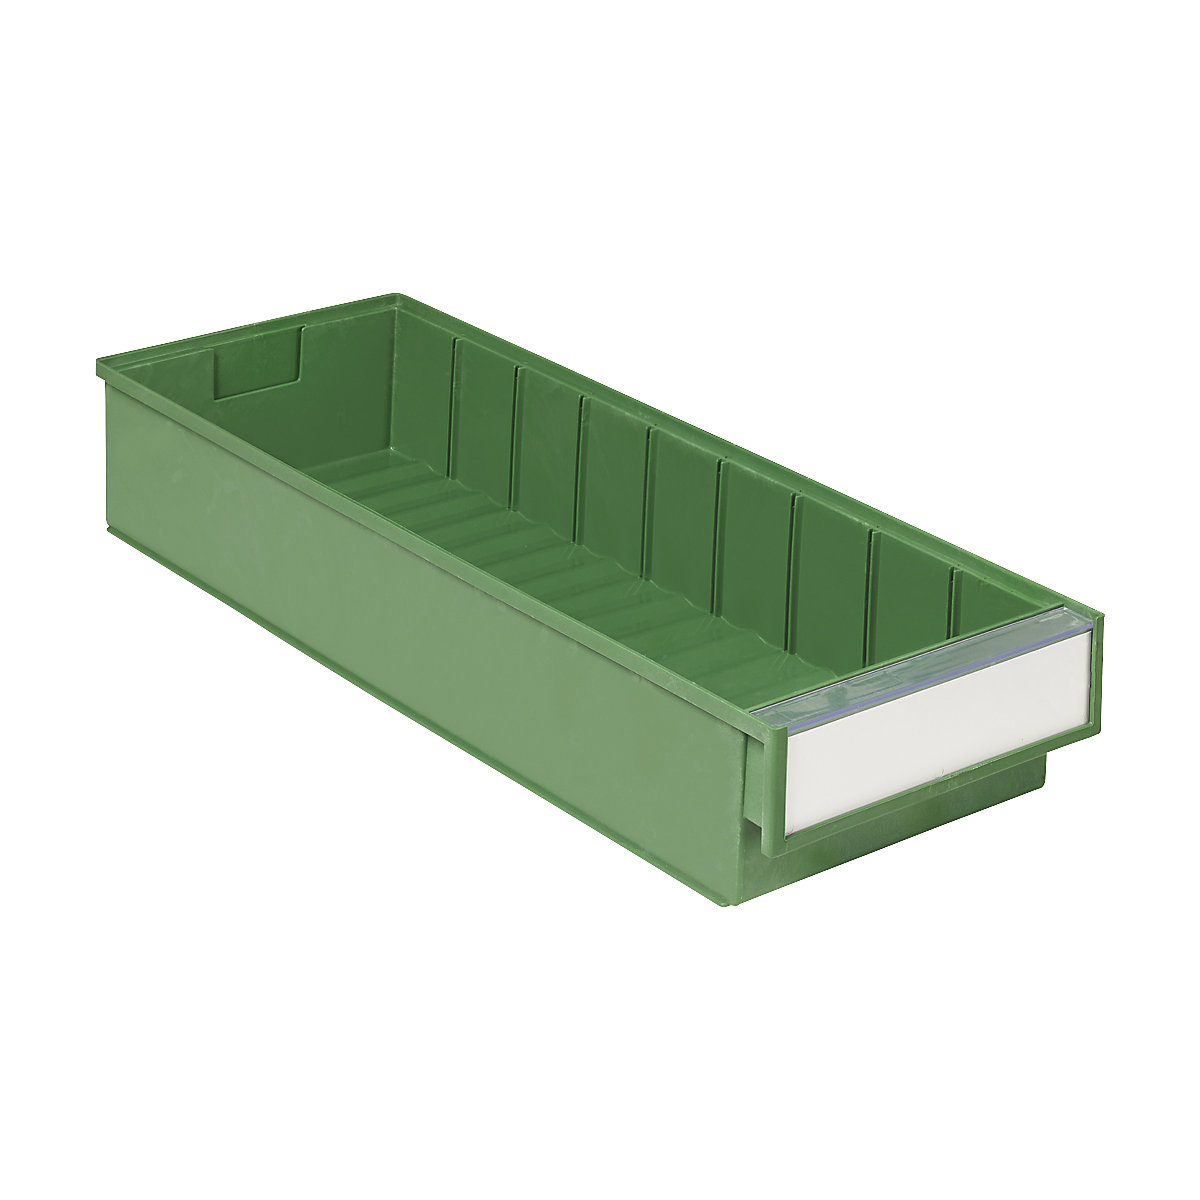 Bac de stockage BiOX – Treston, vert, L x l x h 500 x 186 x 82 mm, lot de 15-3